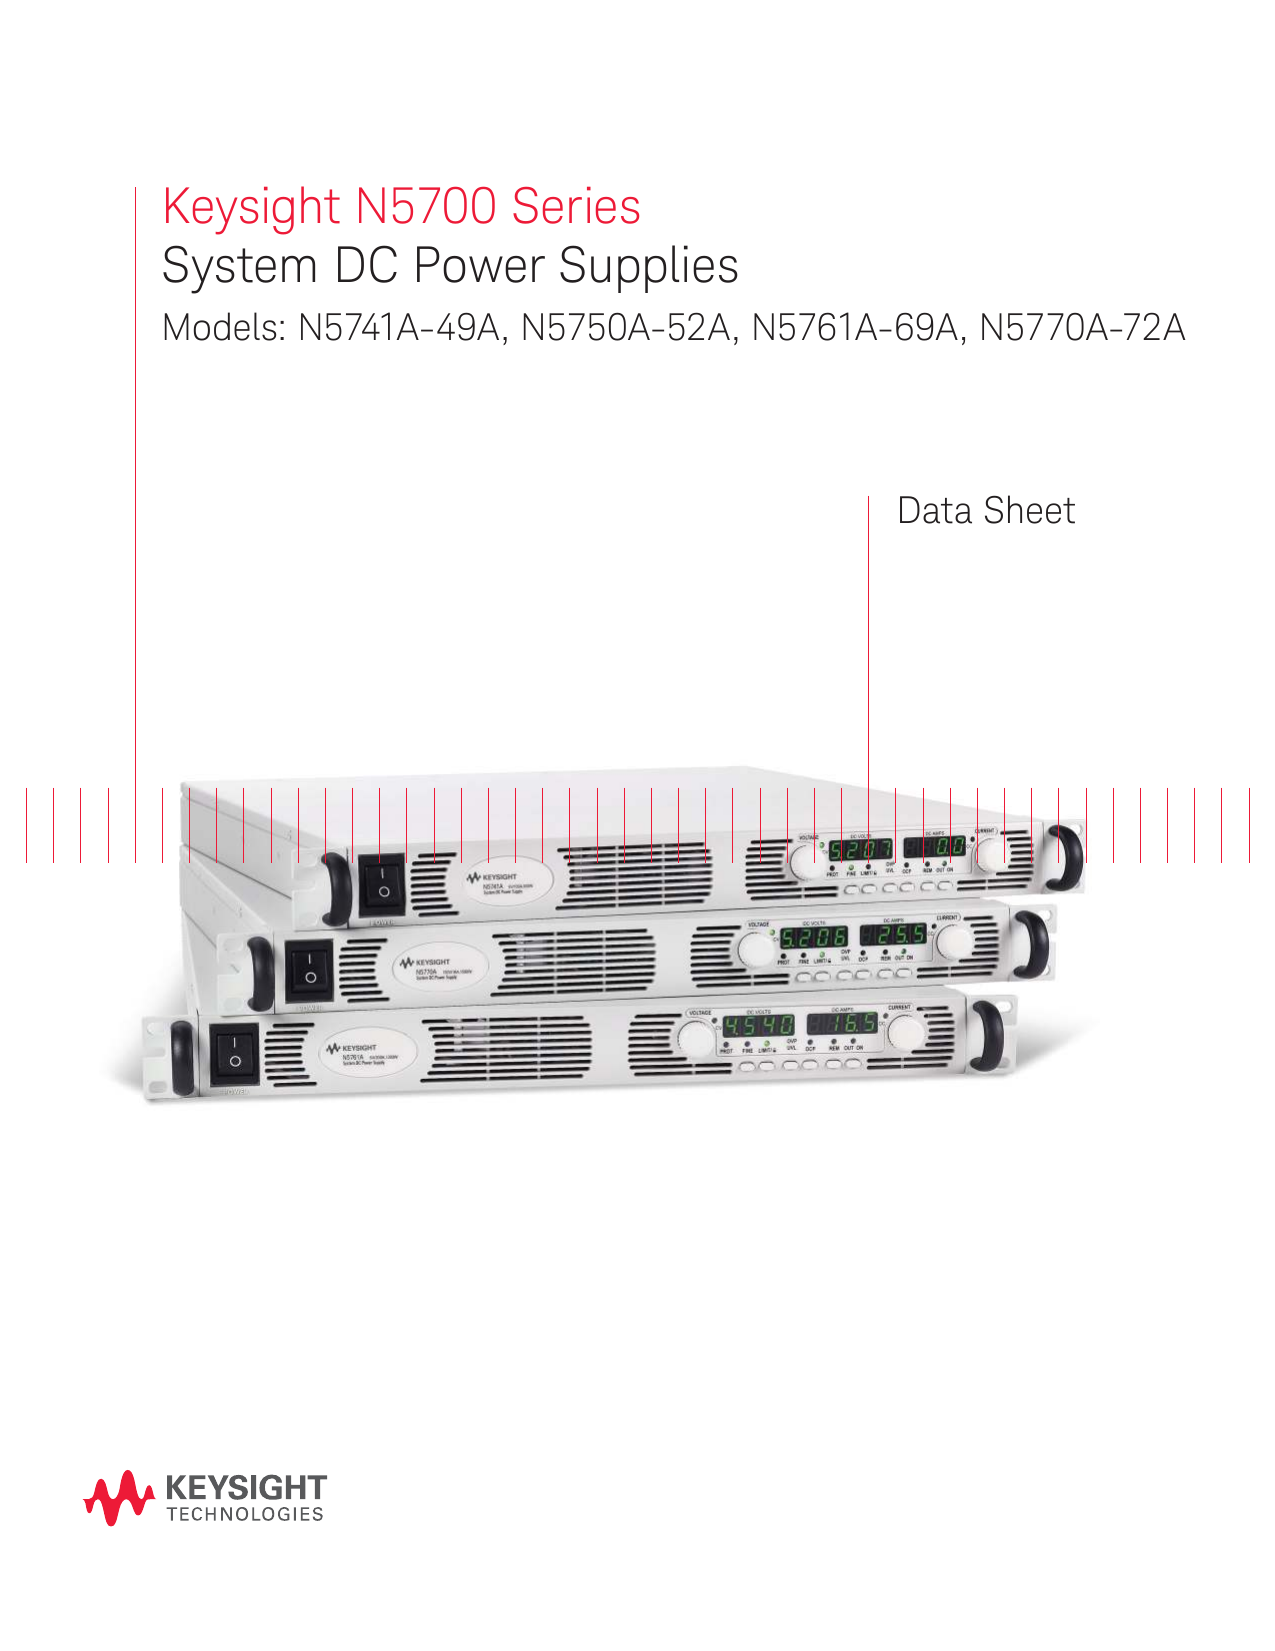 NEW HP/Agilent/Keysight N5772A DC Bench Power Supply 600 V/2.6 A/1560 W 